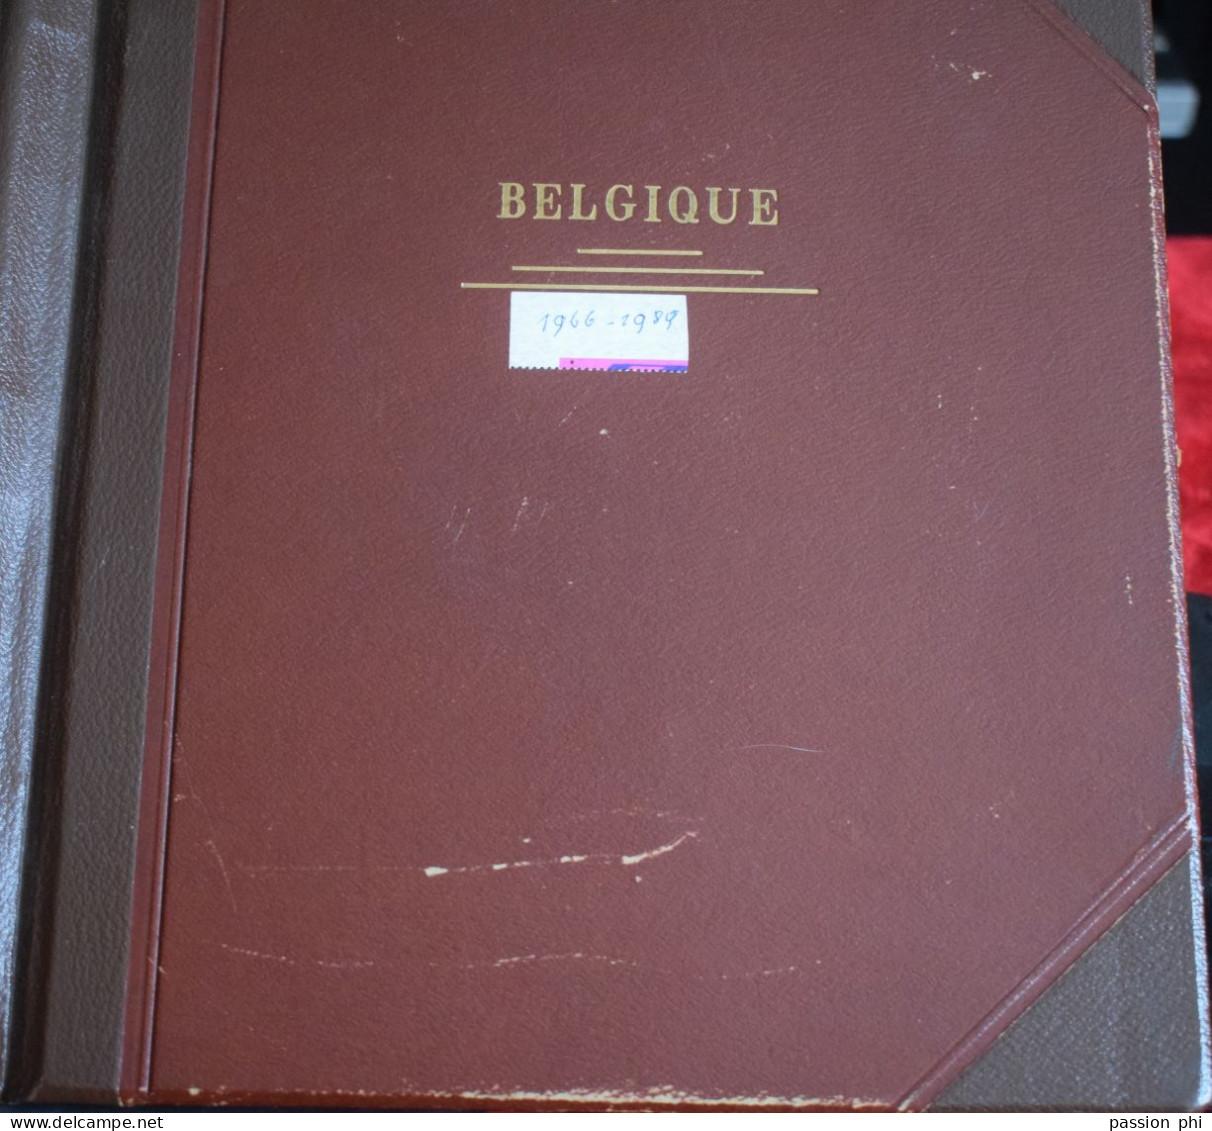 BELGIQUE EN ALBUM PRINET 1966/89 EN MAJORITE SANS CHARNIERE SOUS BANDE HAWID OU COLLE PAR LE BORD DE FEUILLE 2 K - Collections